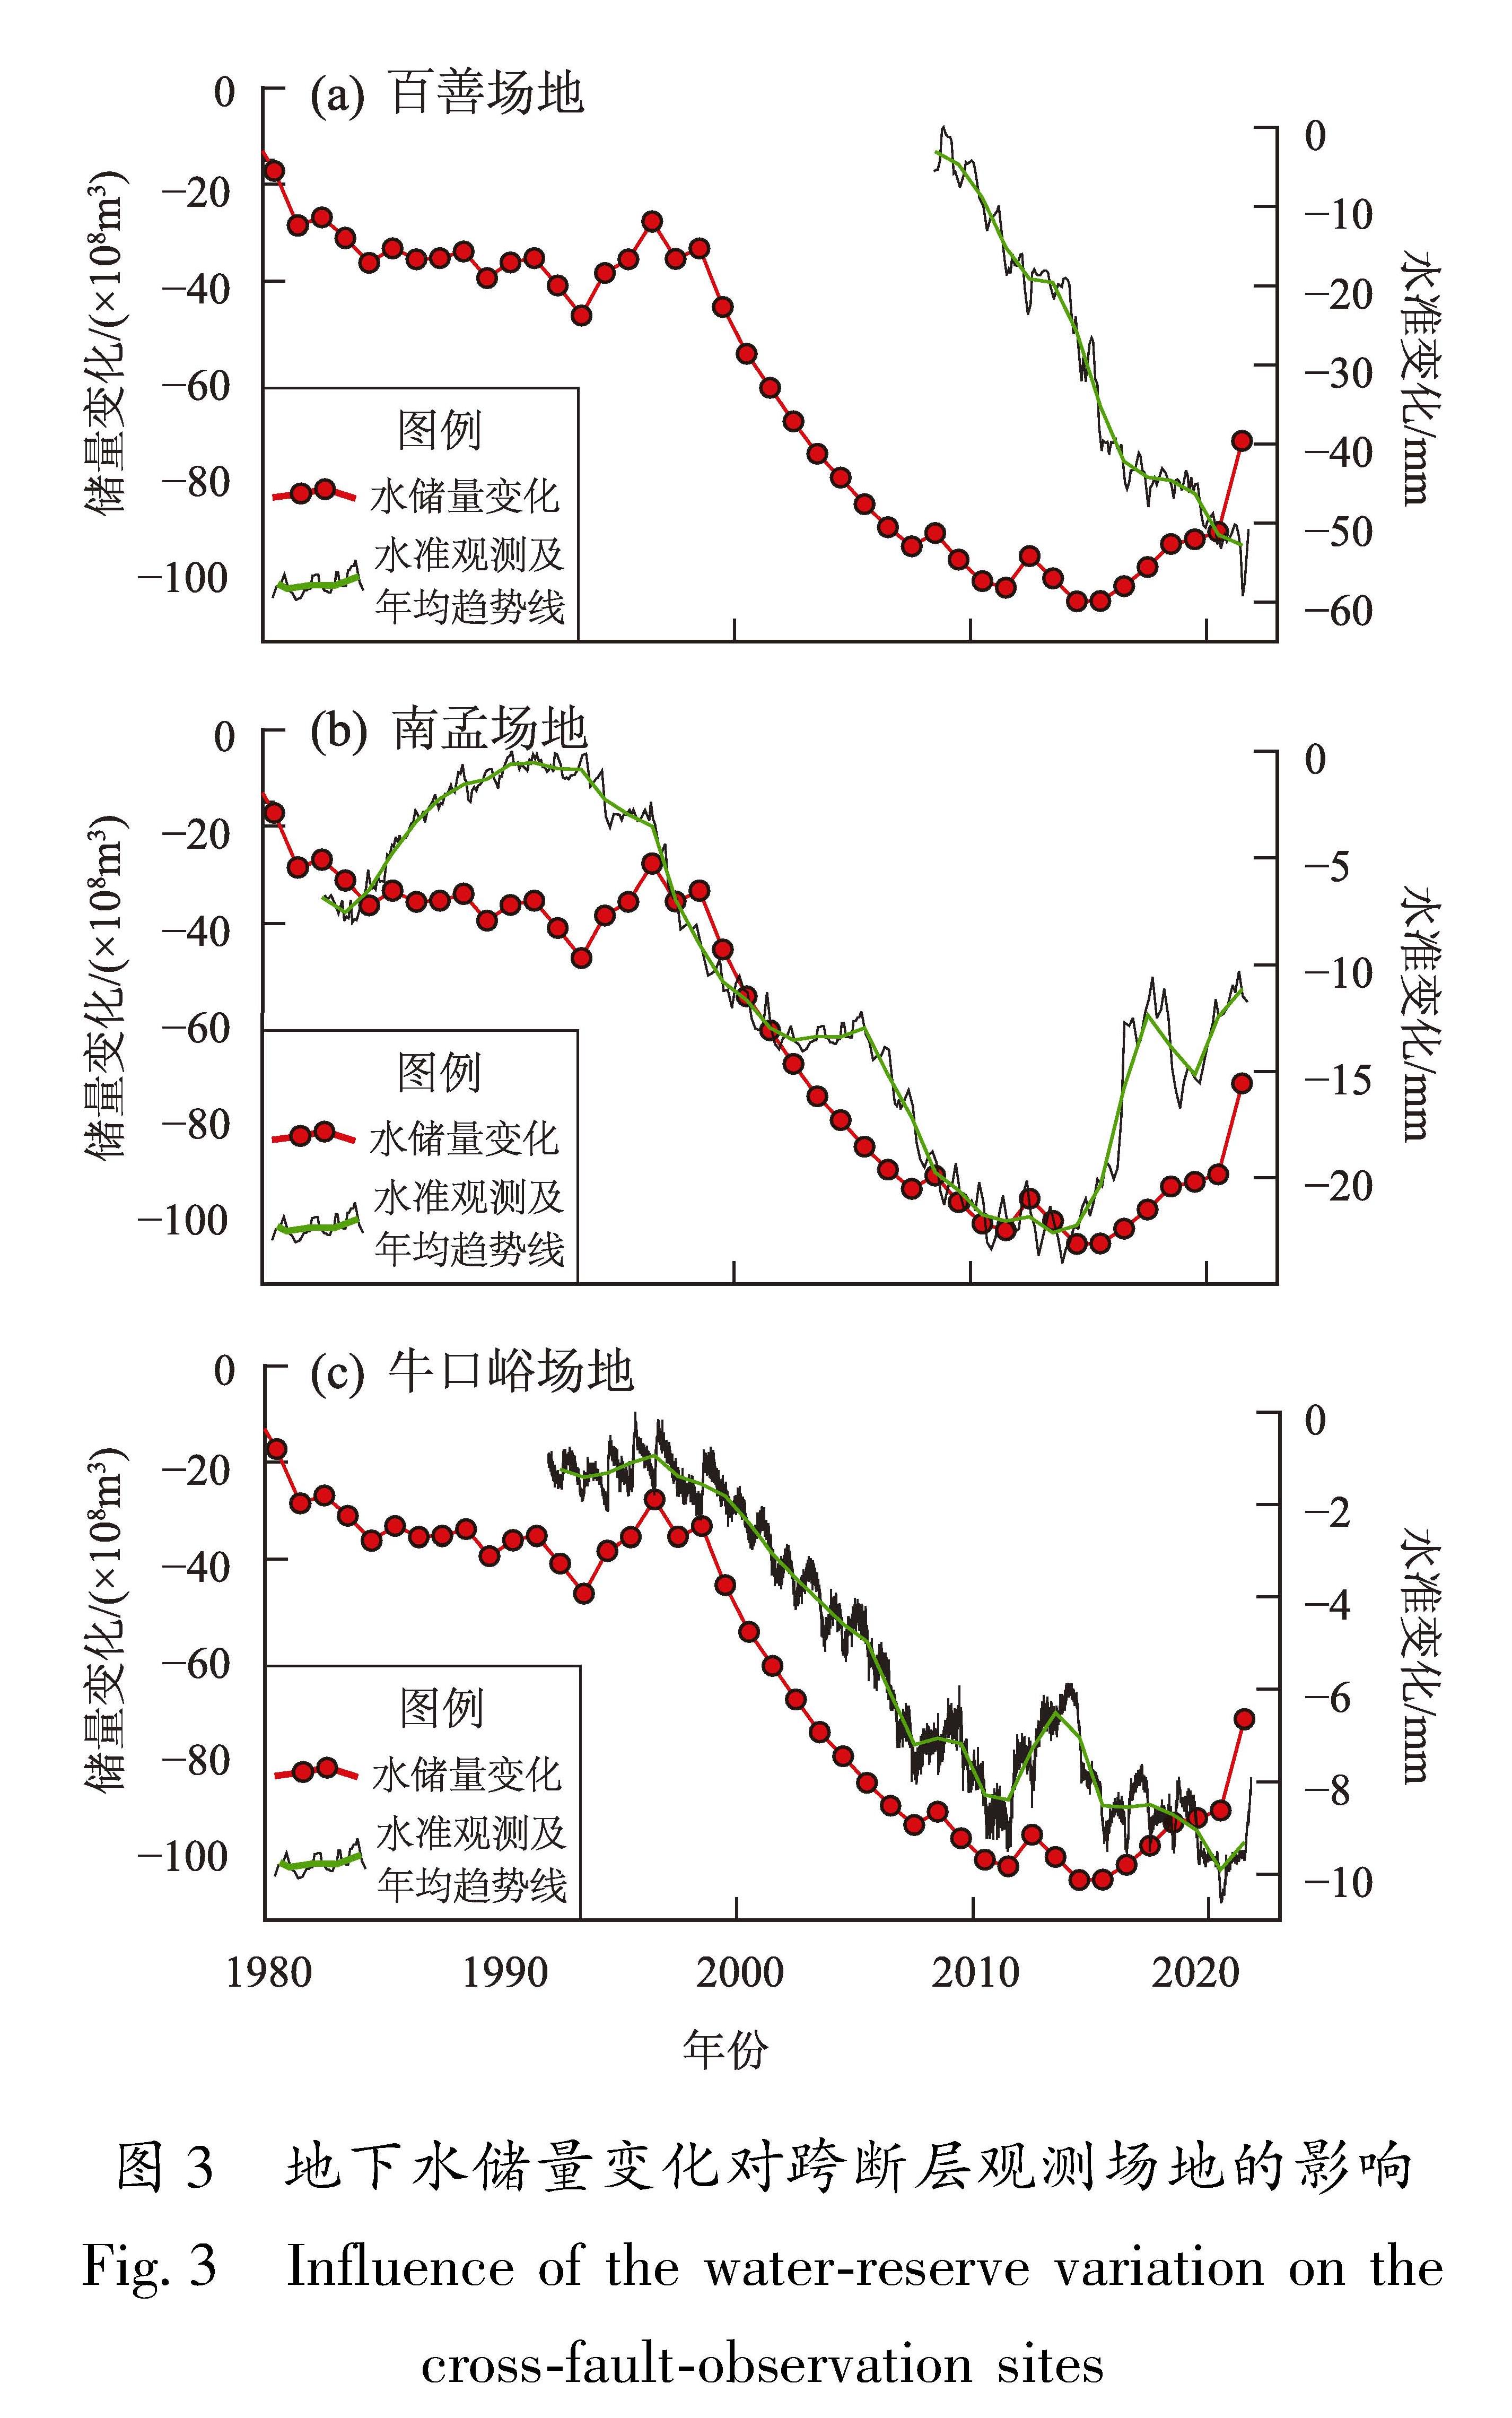 图3 地下水储量变化对跨断层观测场地的影响<br/>Fig.3 Influence of the water-reserve variation on the cross-fault-observation sites